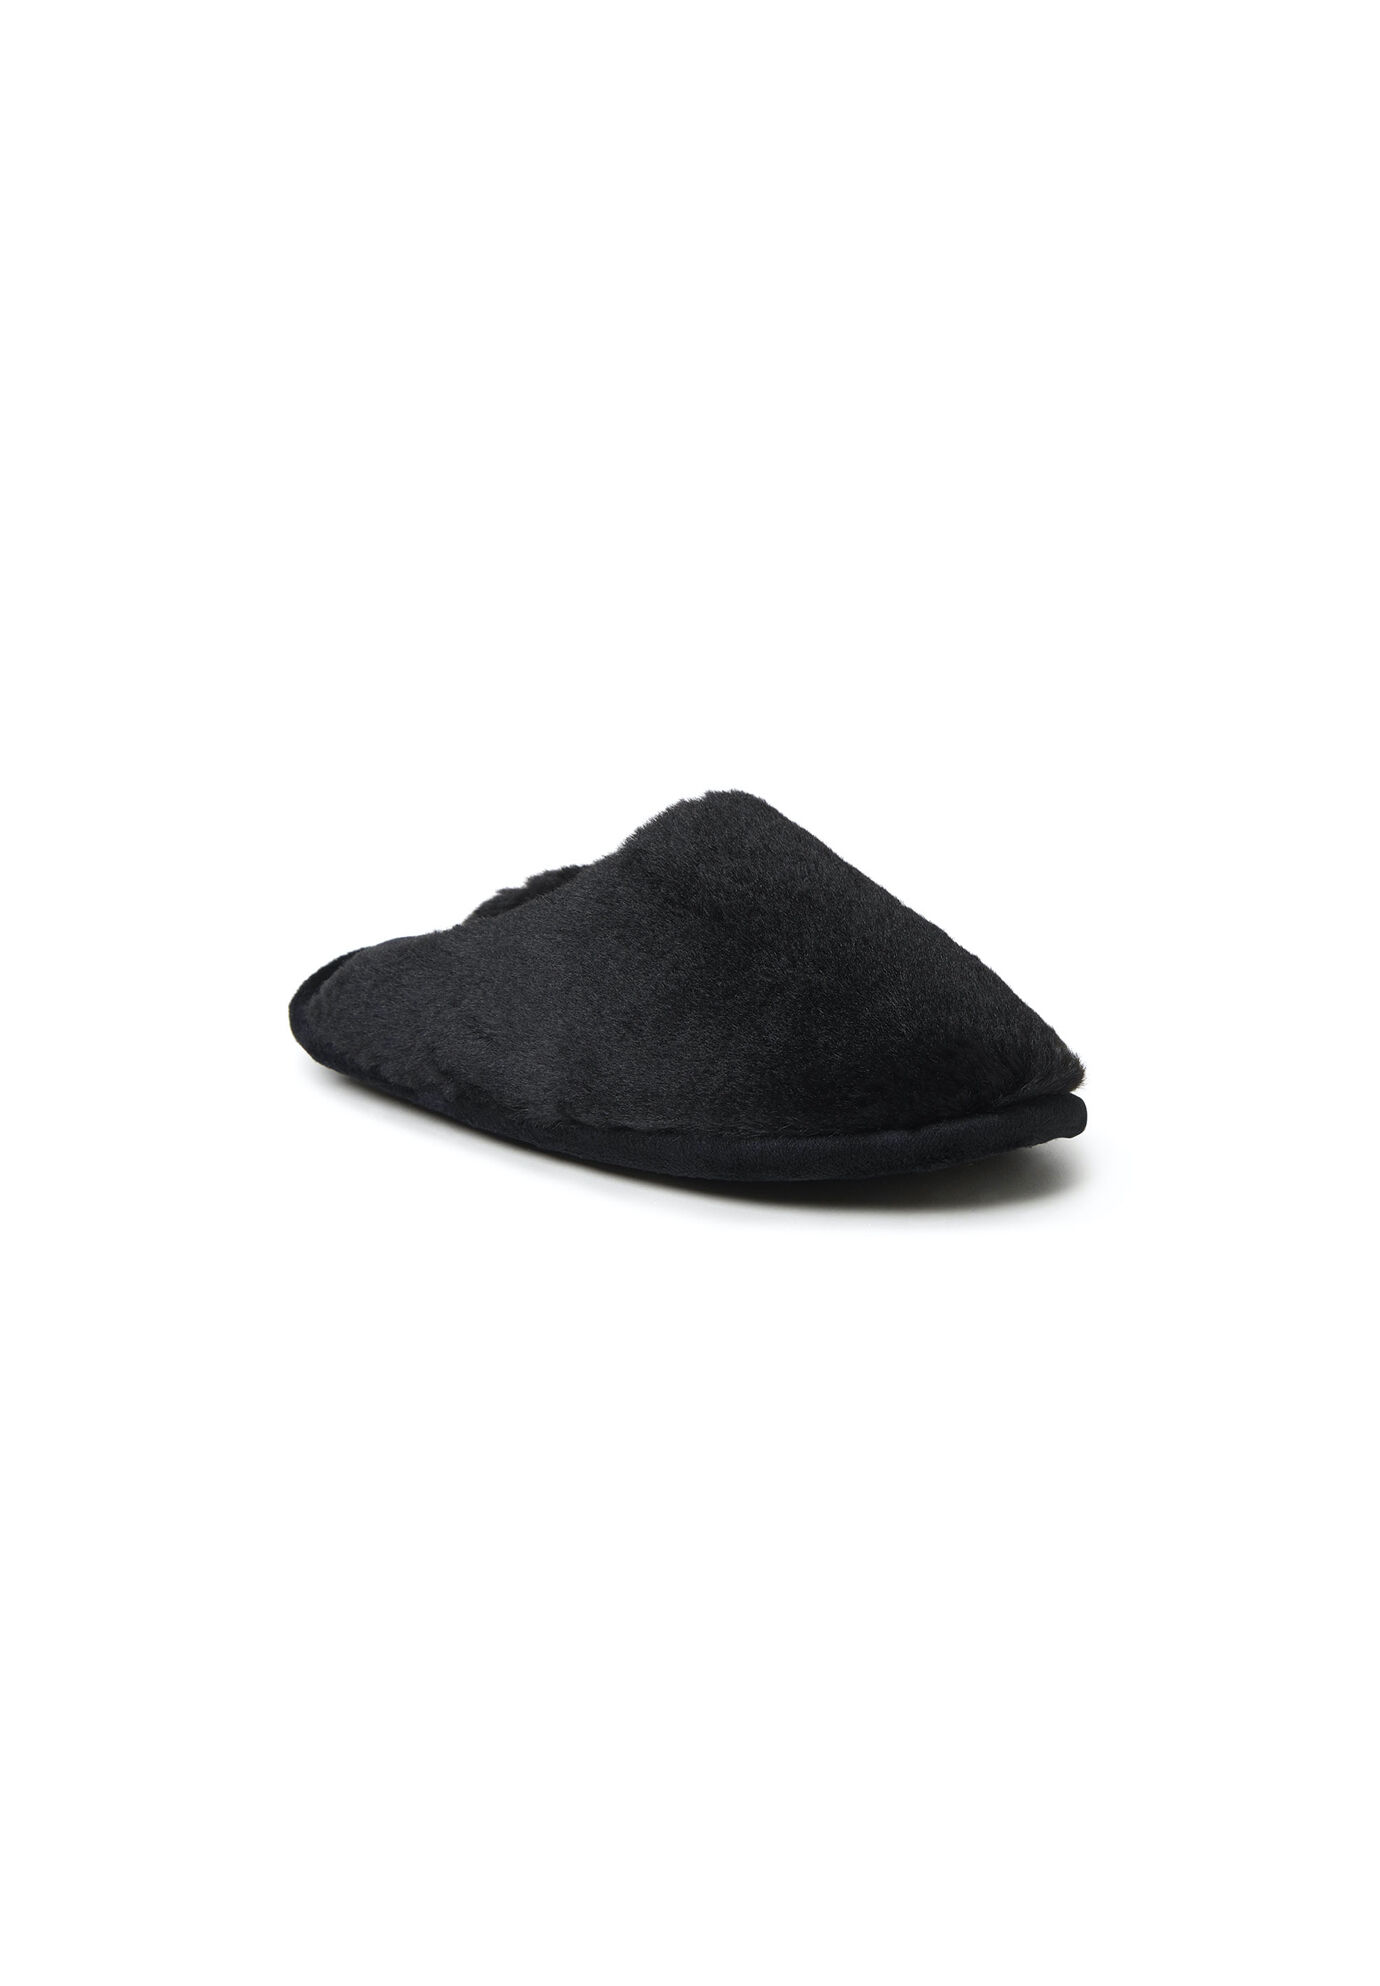 Women's Bailey Furry Scuff Slipper by Dearfoams in Black (Size SMALL)